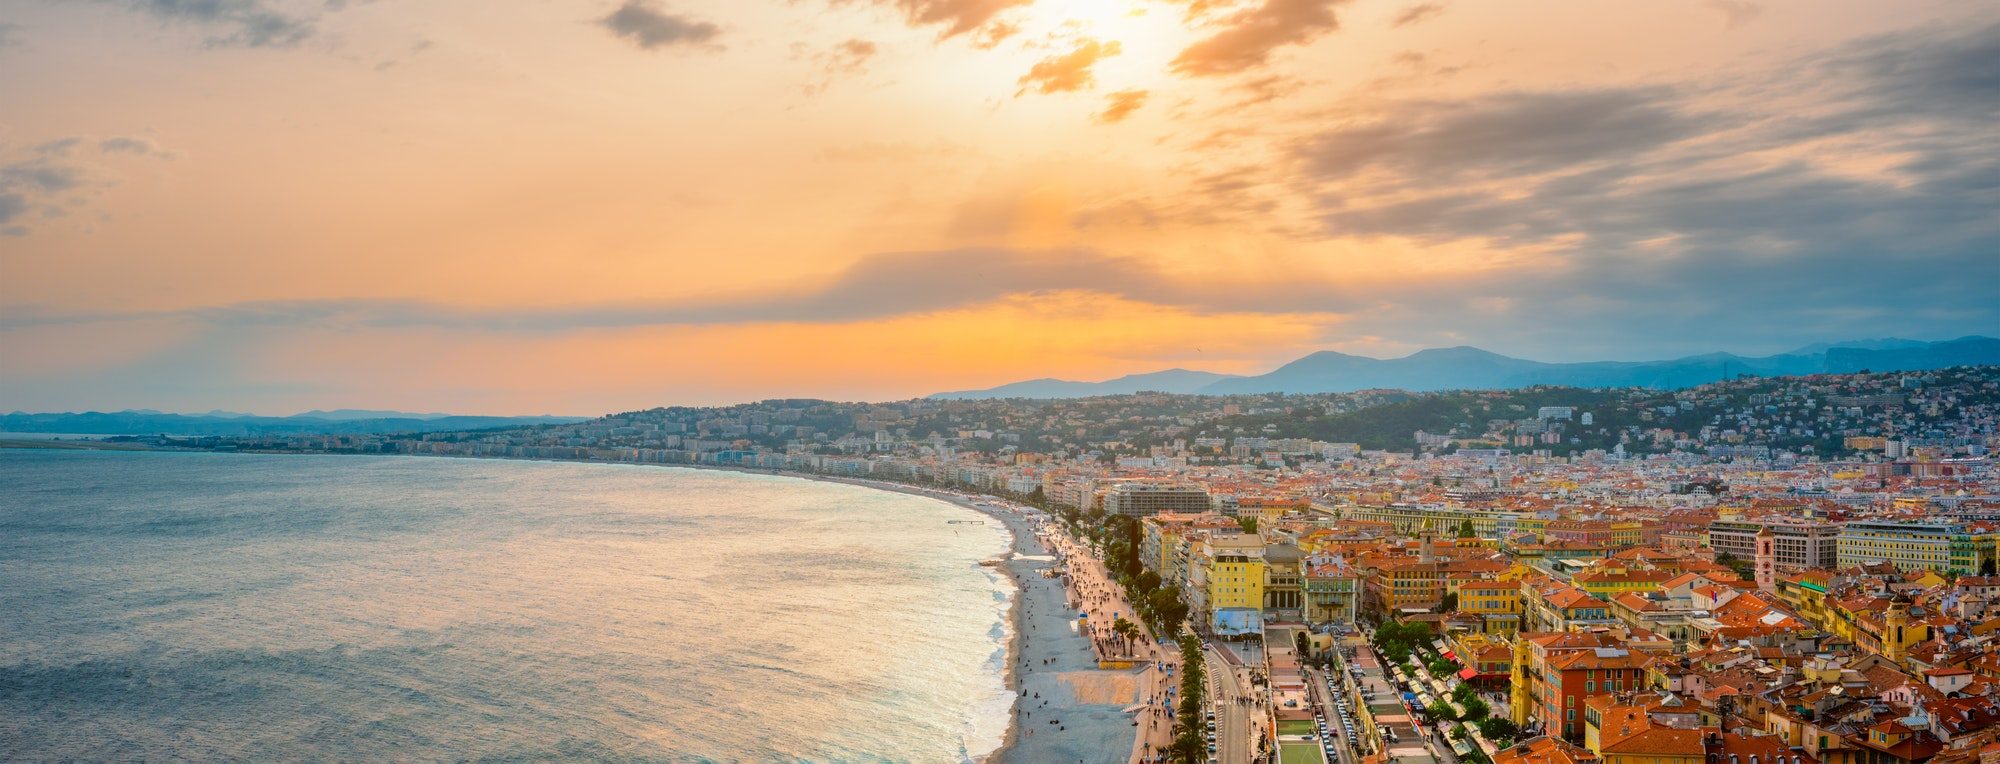 Acheter sa résidence secondaire à Nice